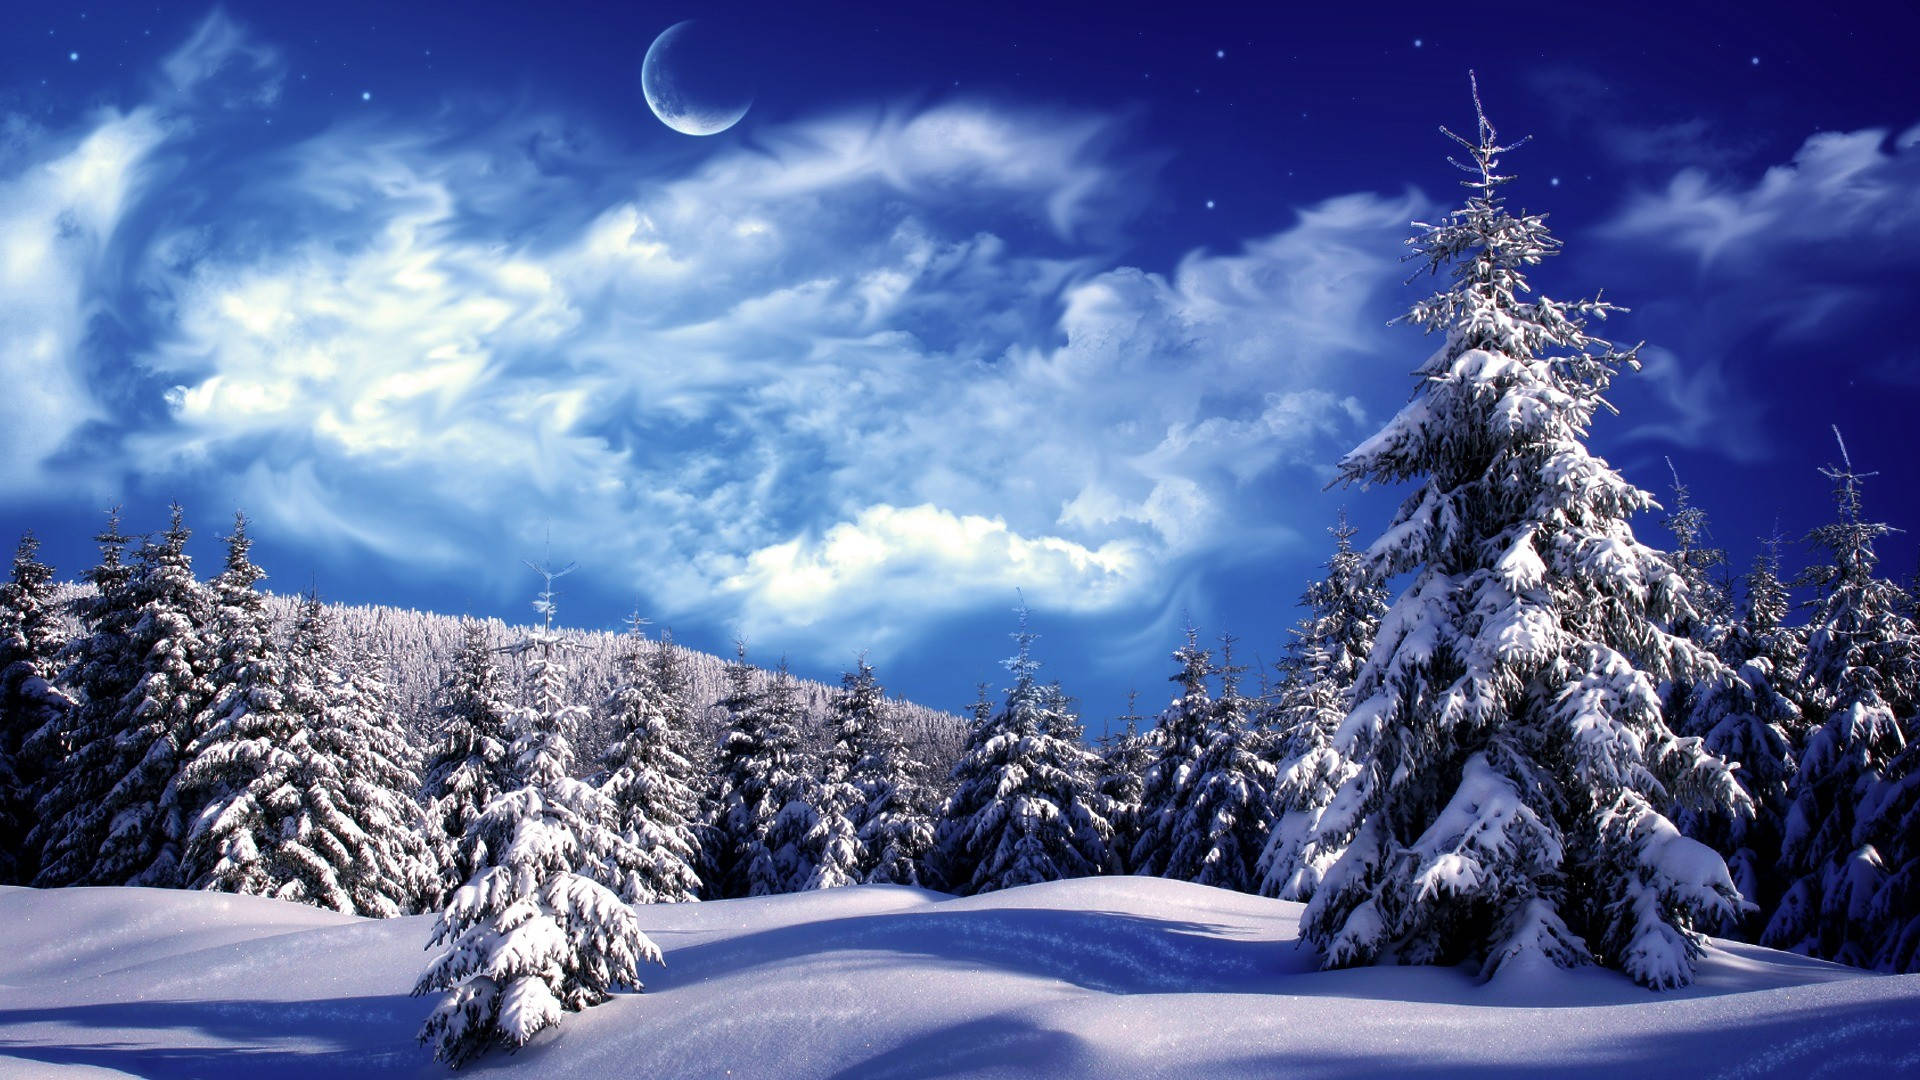 Beautiful Winter Scenes Wallpapers